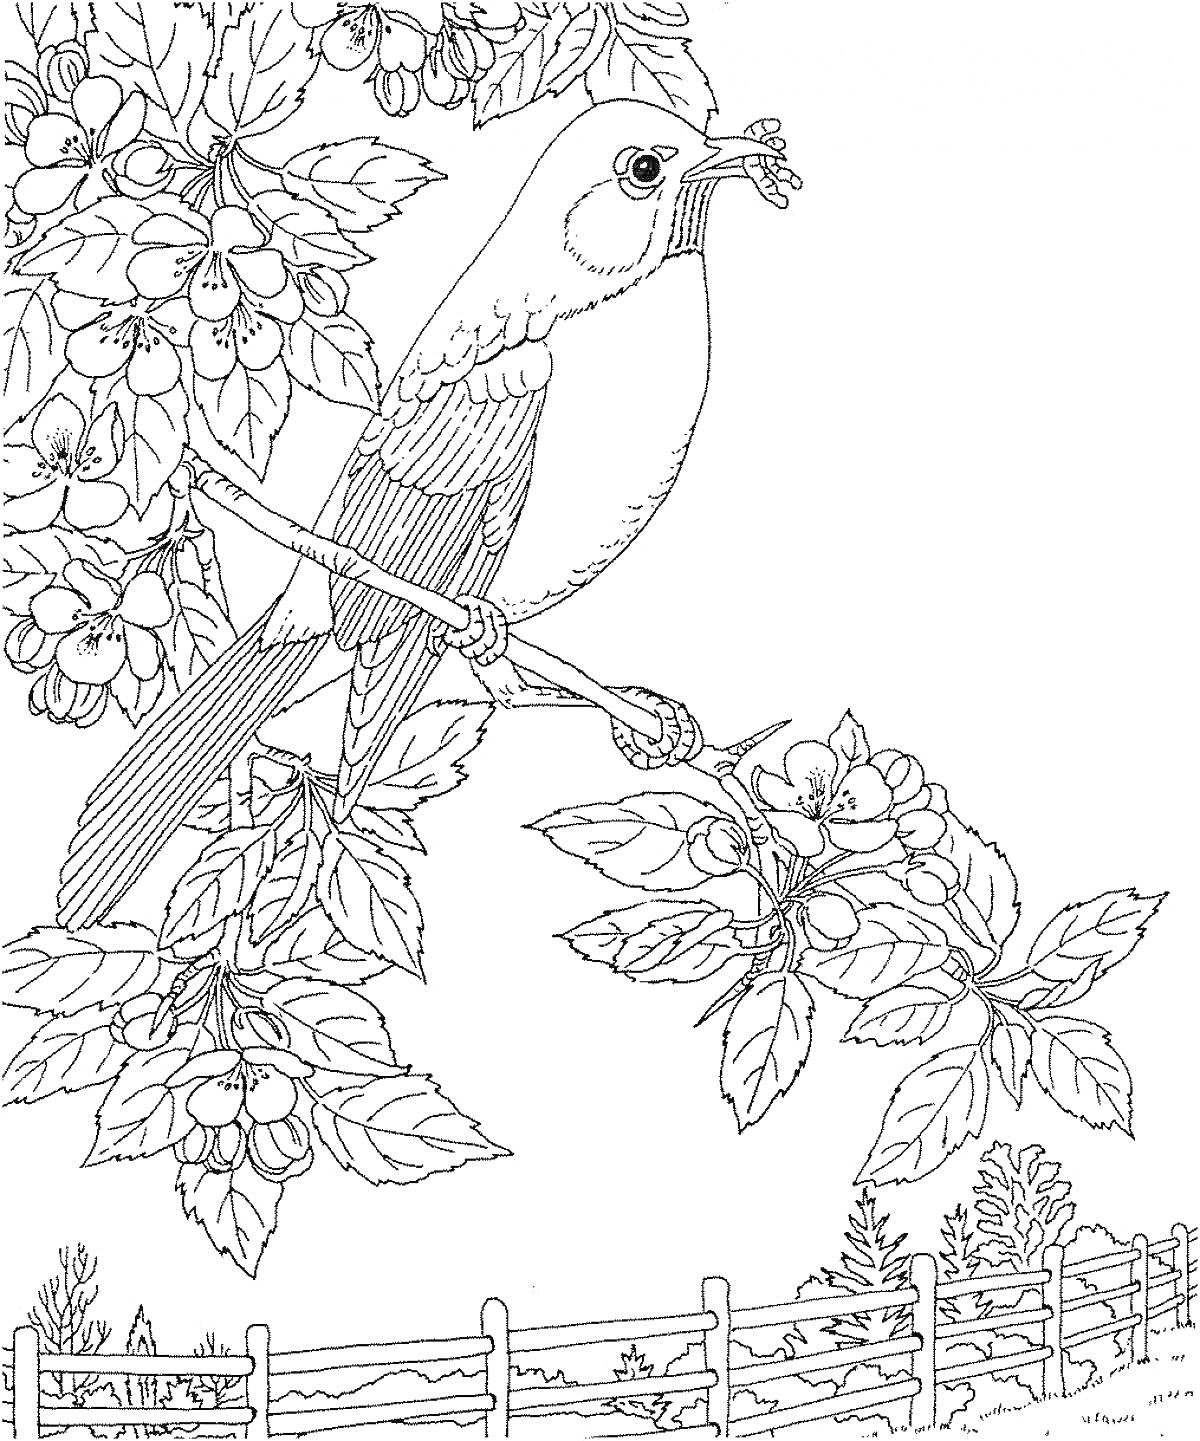 Раскраска Птица с ягодами в клюве на ветке дерева с ягодами, забор и деревья на заднем плане